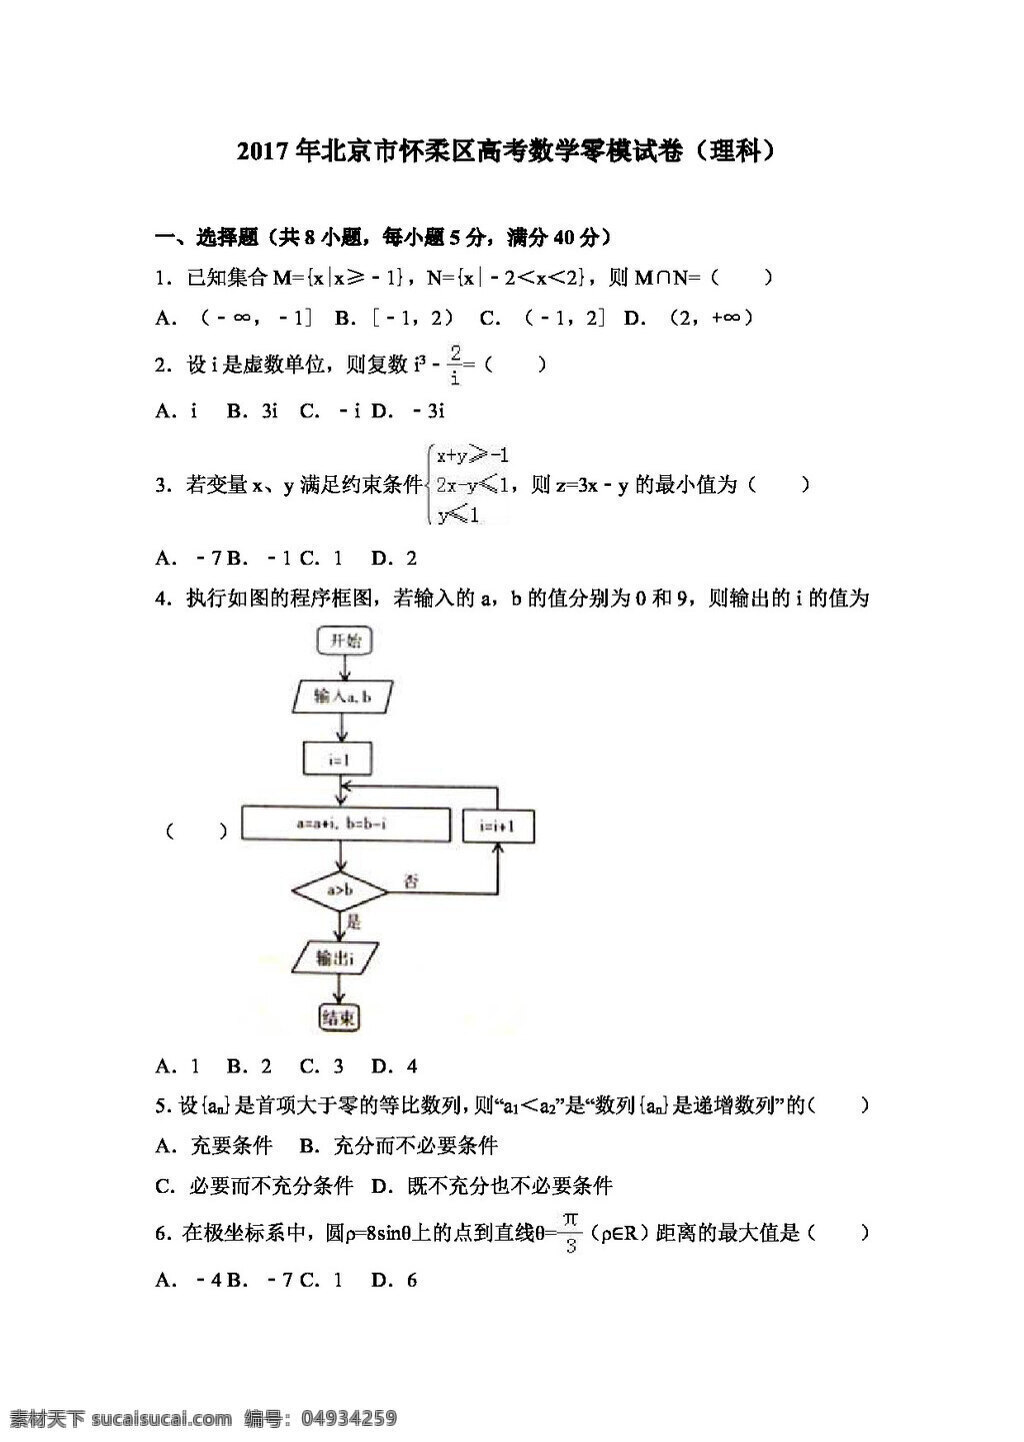 数学 人教 版 2017 年 北京市 怀柔区 高考 零 模 试卷 理科 高考专区 人教版